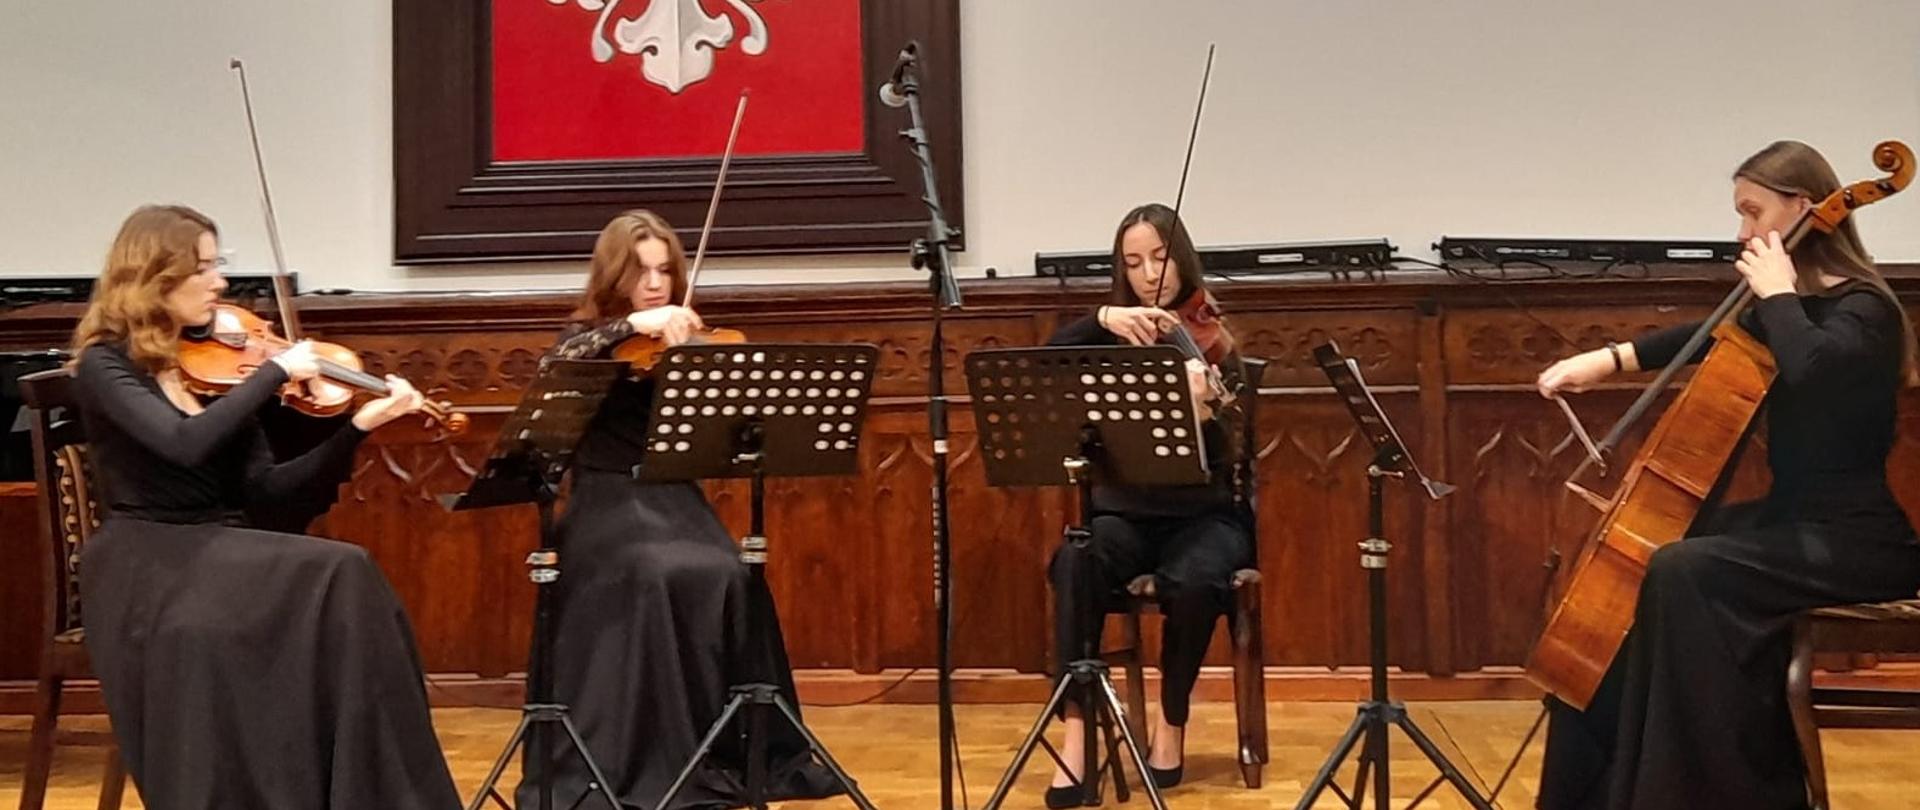 Członkinie kwartetu smyczkowego PSM II stopnia w Mielcu podczas koncertu w trakcie uroczystości wręczenia Odznaczenia Pieczęć Zasług Obywatelskich TMZMu